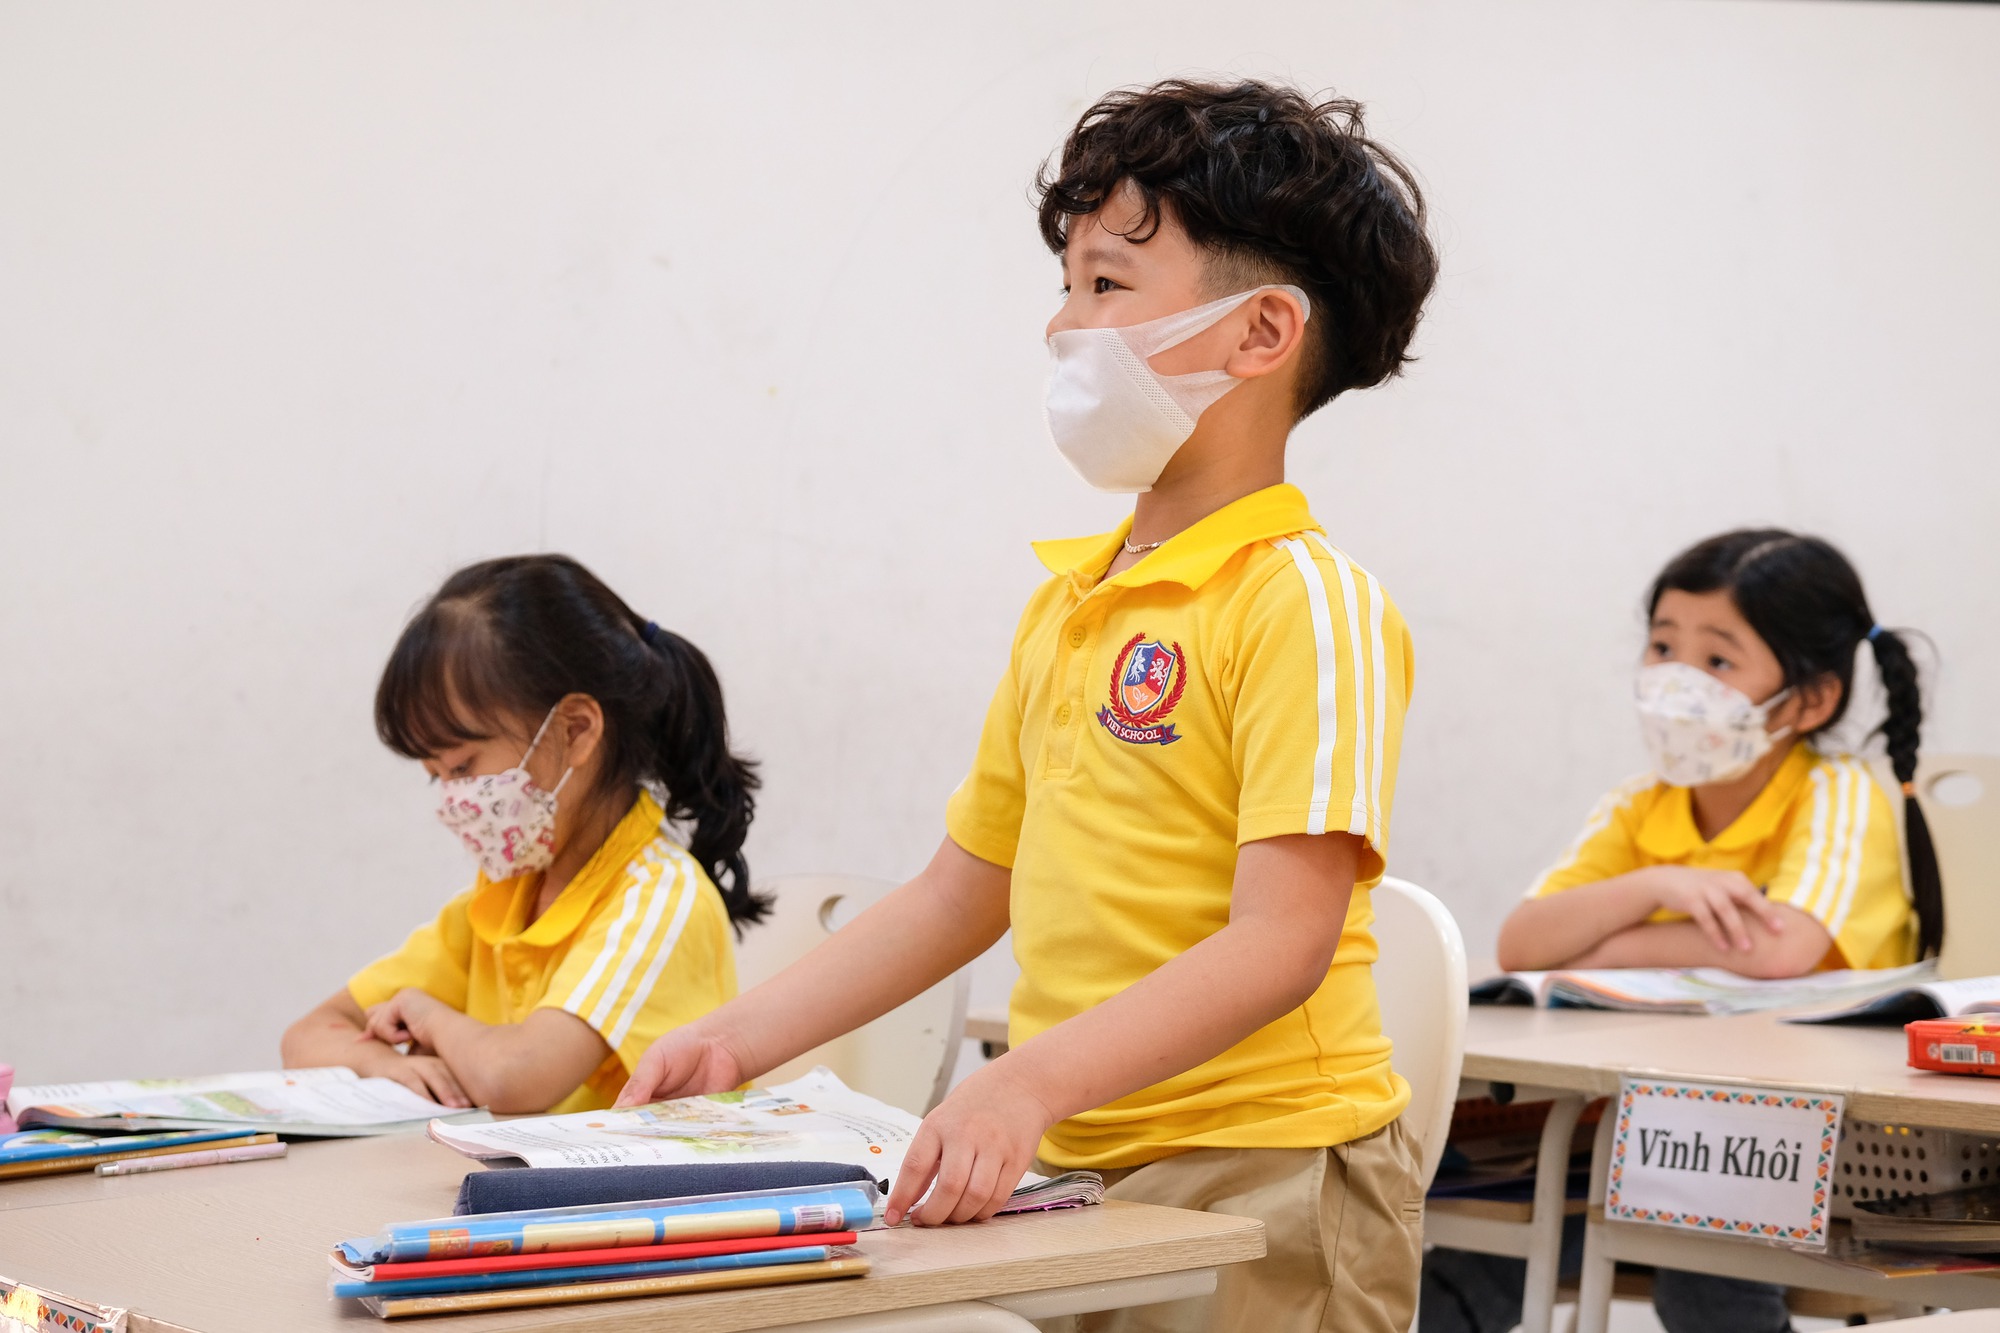 Quận Thanh Xuân có 1 ngôi trường ngập nắng với triết lý giáo dục hiện đại - Ảnh 7.